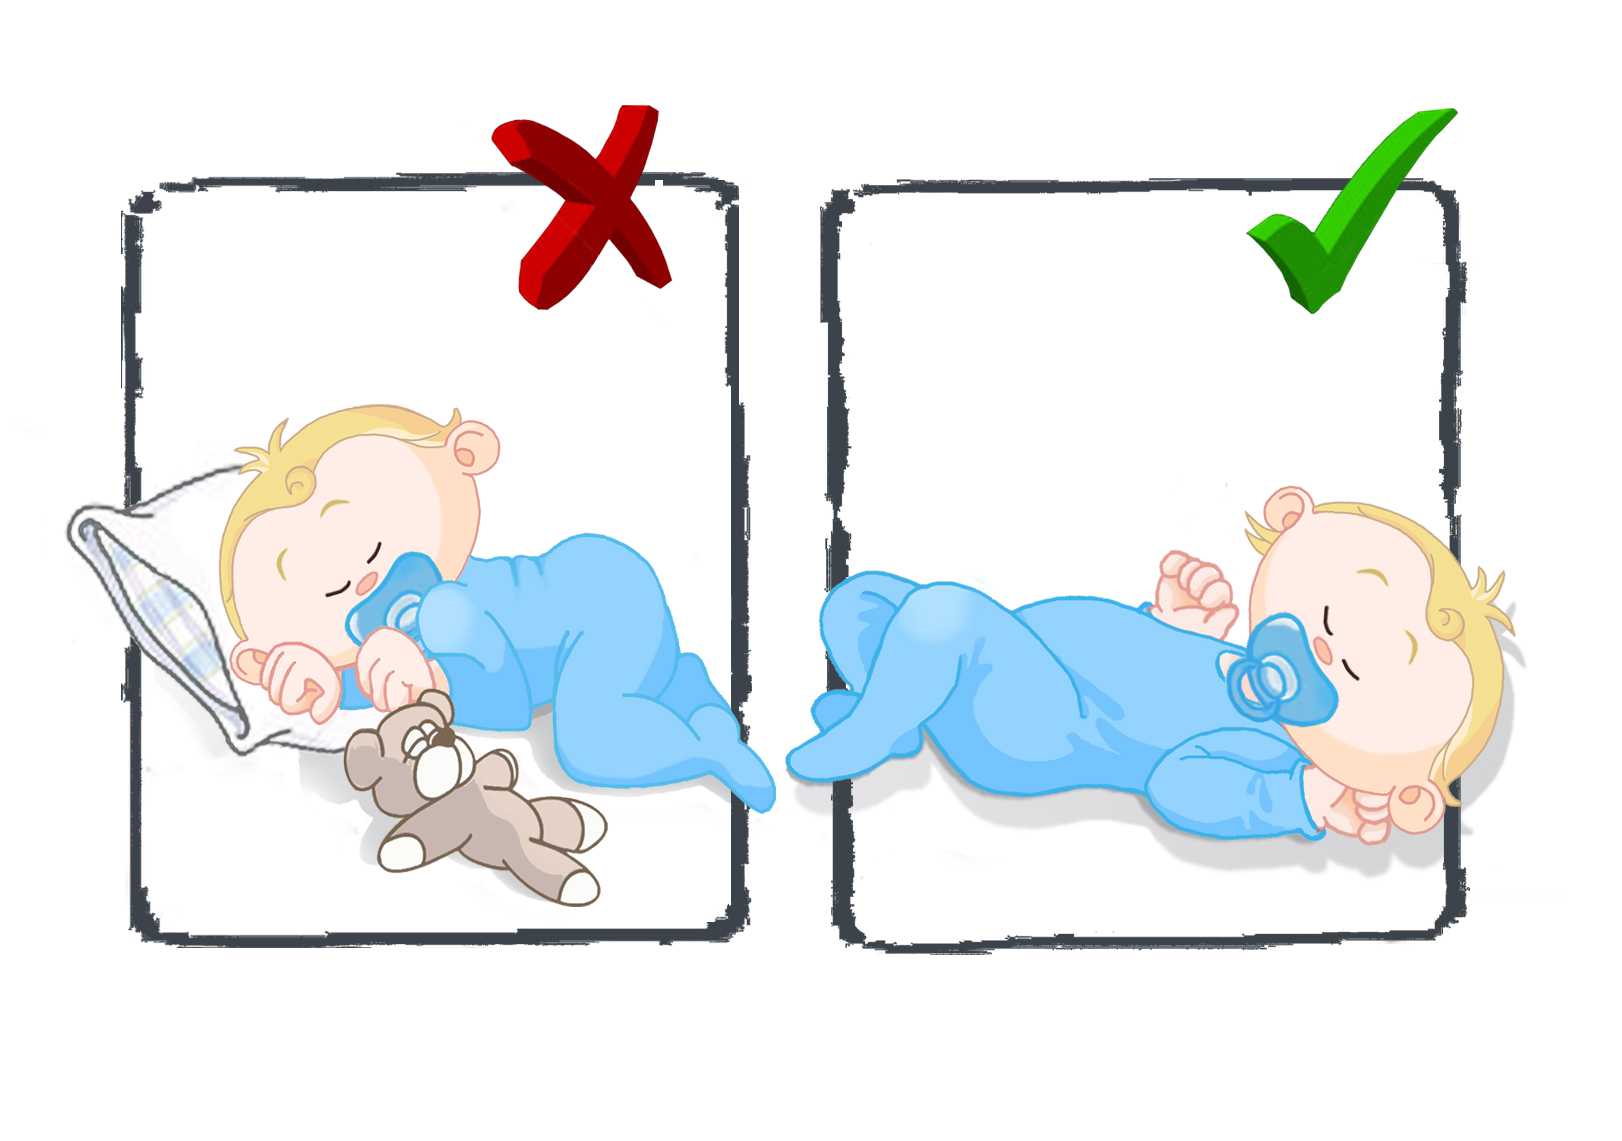 Как уложить грудничка спать на ночь или днем: правильно укладываем новорожденного